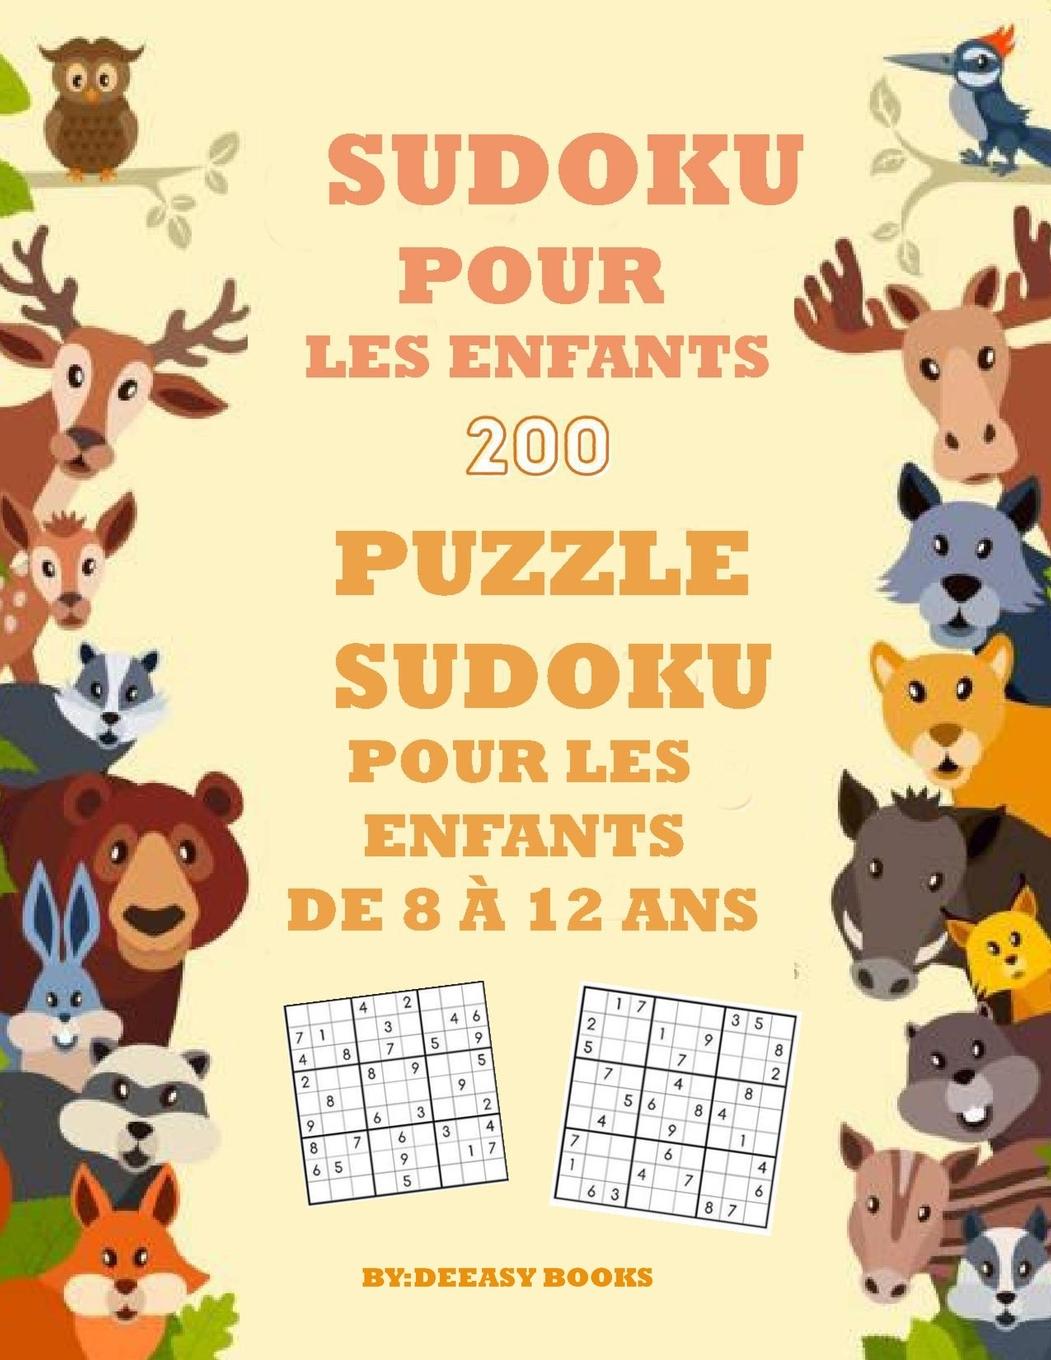 Kniha Livre de Sudoku pour les enfants 